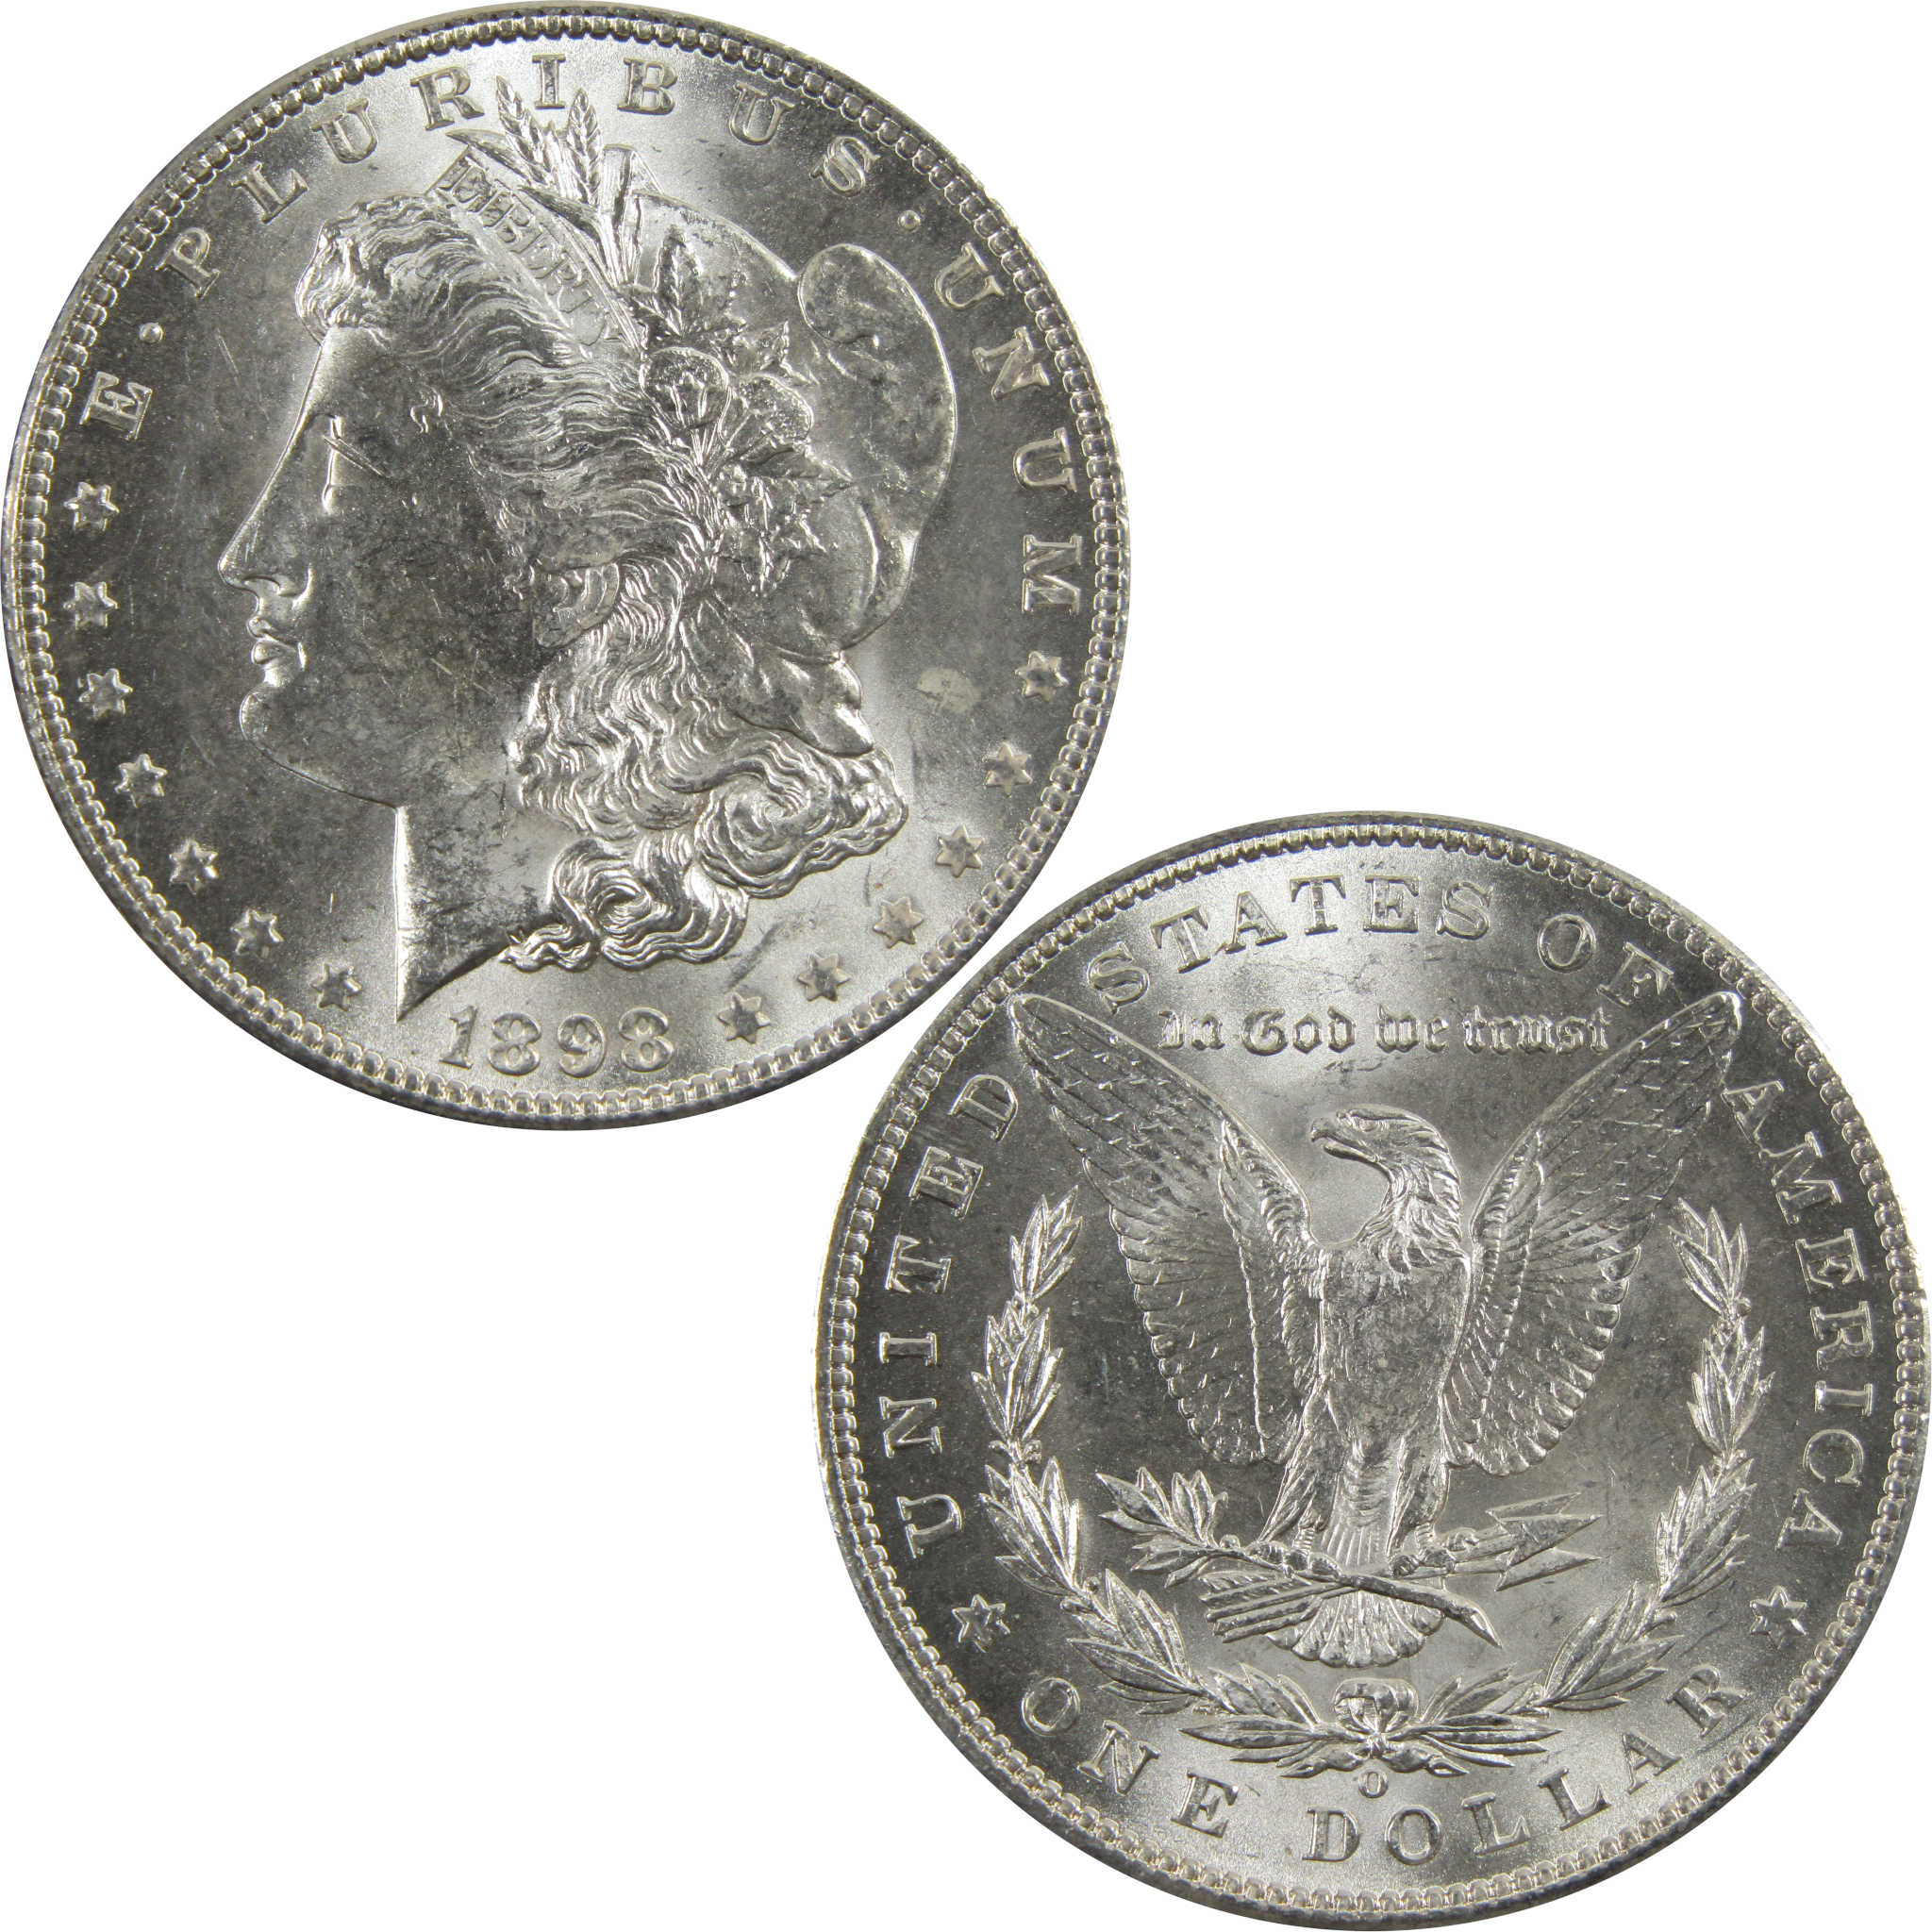 1898 O Morgan Dollar BU Uncirculated 90% Silver $1 Coin SKU:I5248 - Morgan coin - Morgan silver dollar - Morgan silver dollar for sale - Profile Coins &amp; Collectibles